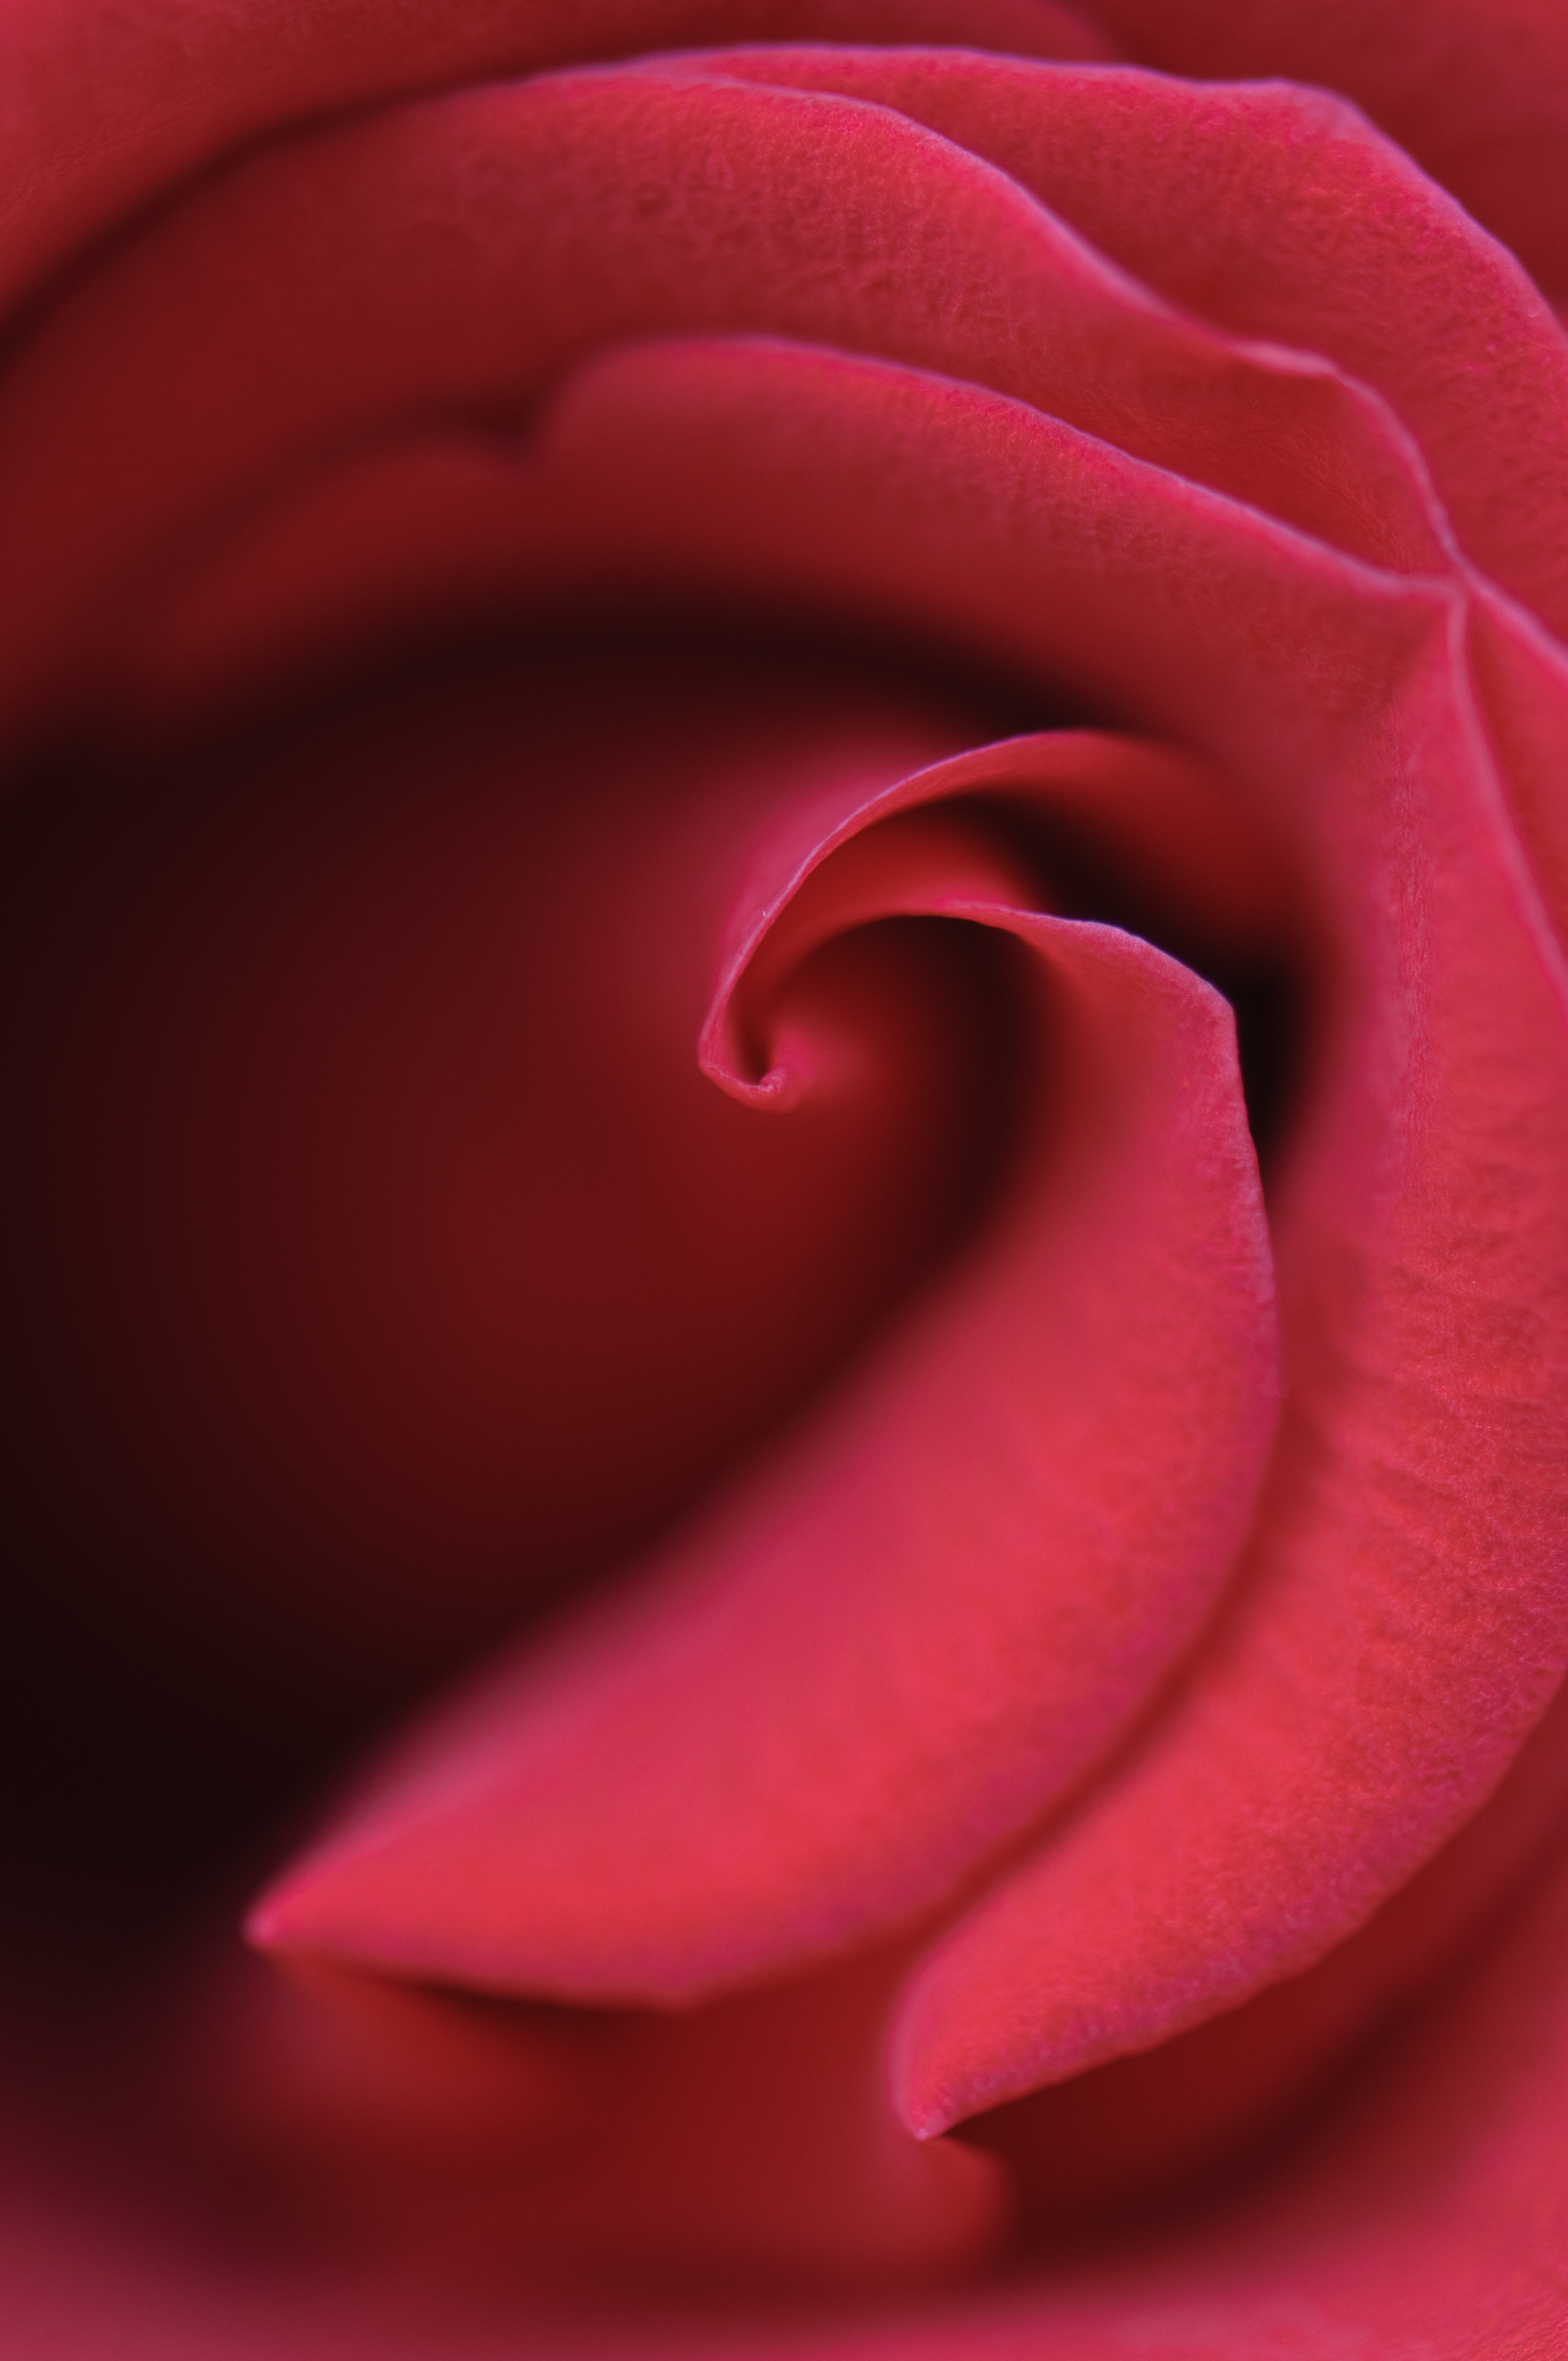 Download mobile wallpaper Petals, Bud, Macro, Rose, Rose Flower for free.